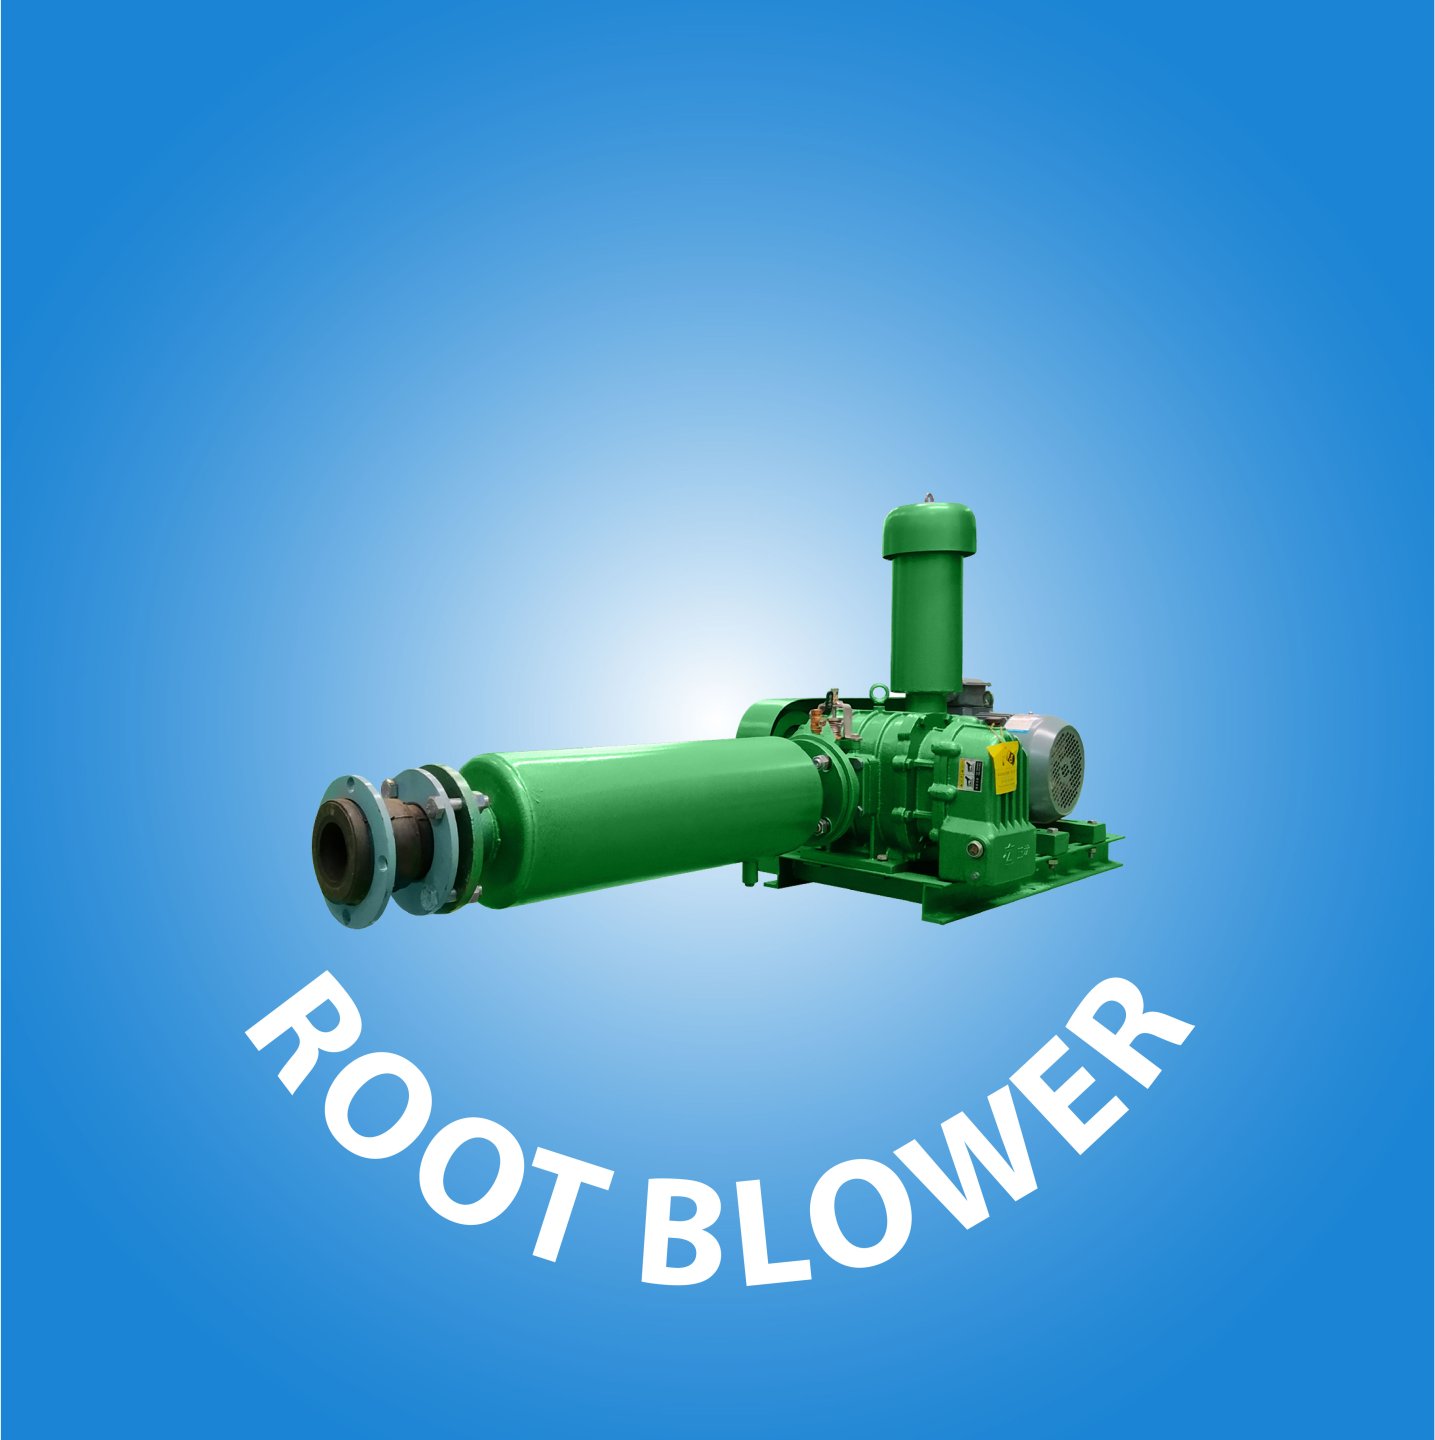  Root Blower cover kategori website 33